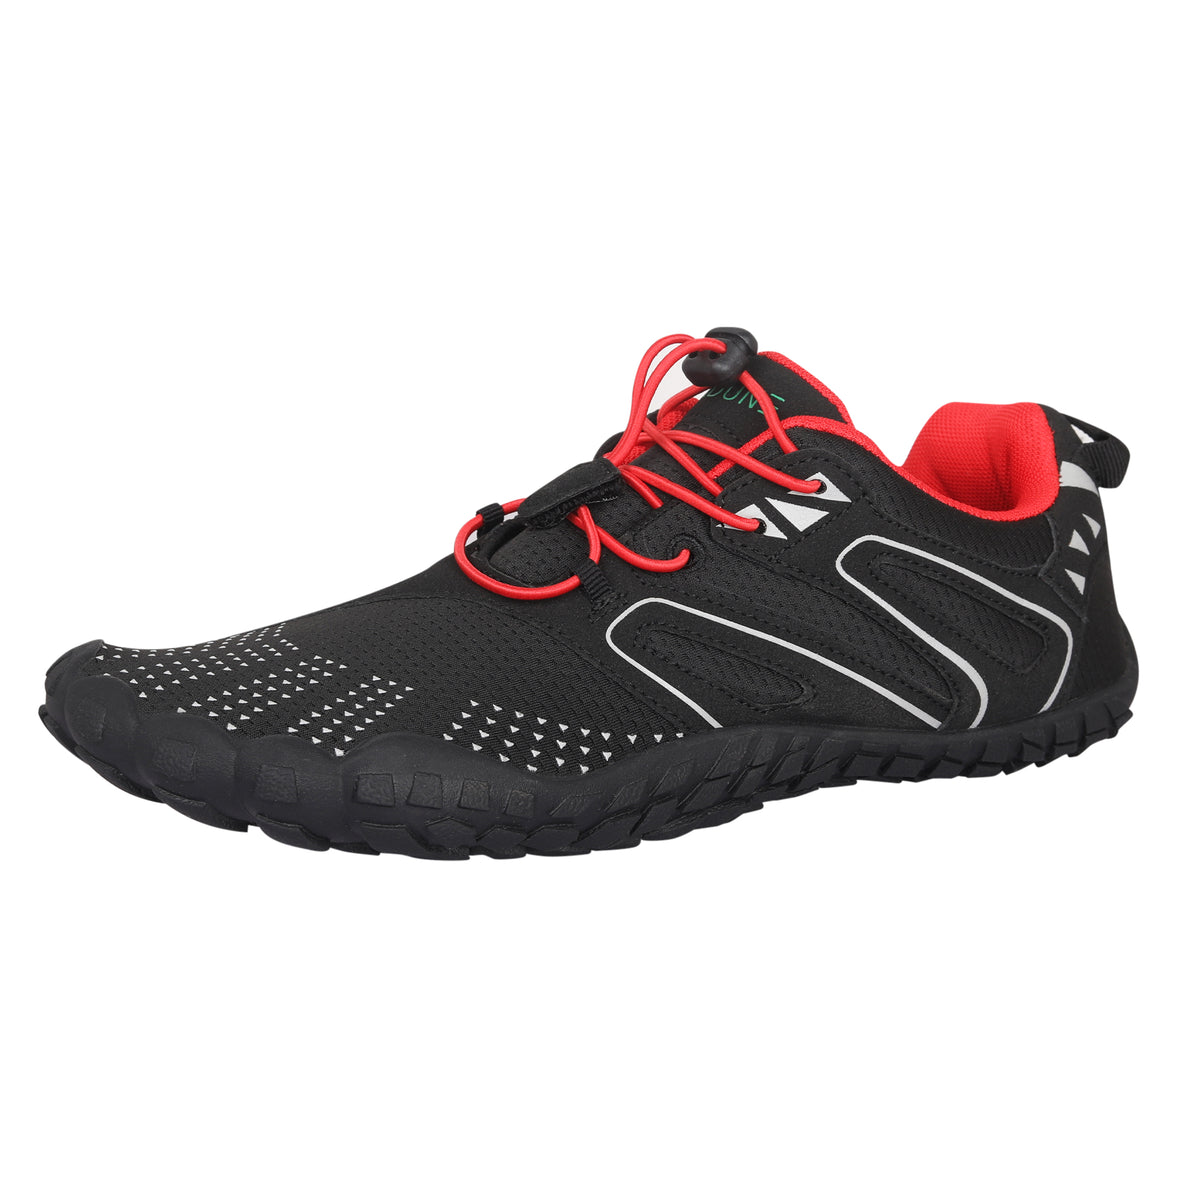 ANDUNE Women’s Barefoot & Minimalist Cross Training Shoes – All Terrain Red Dash